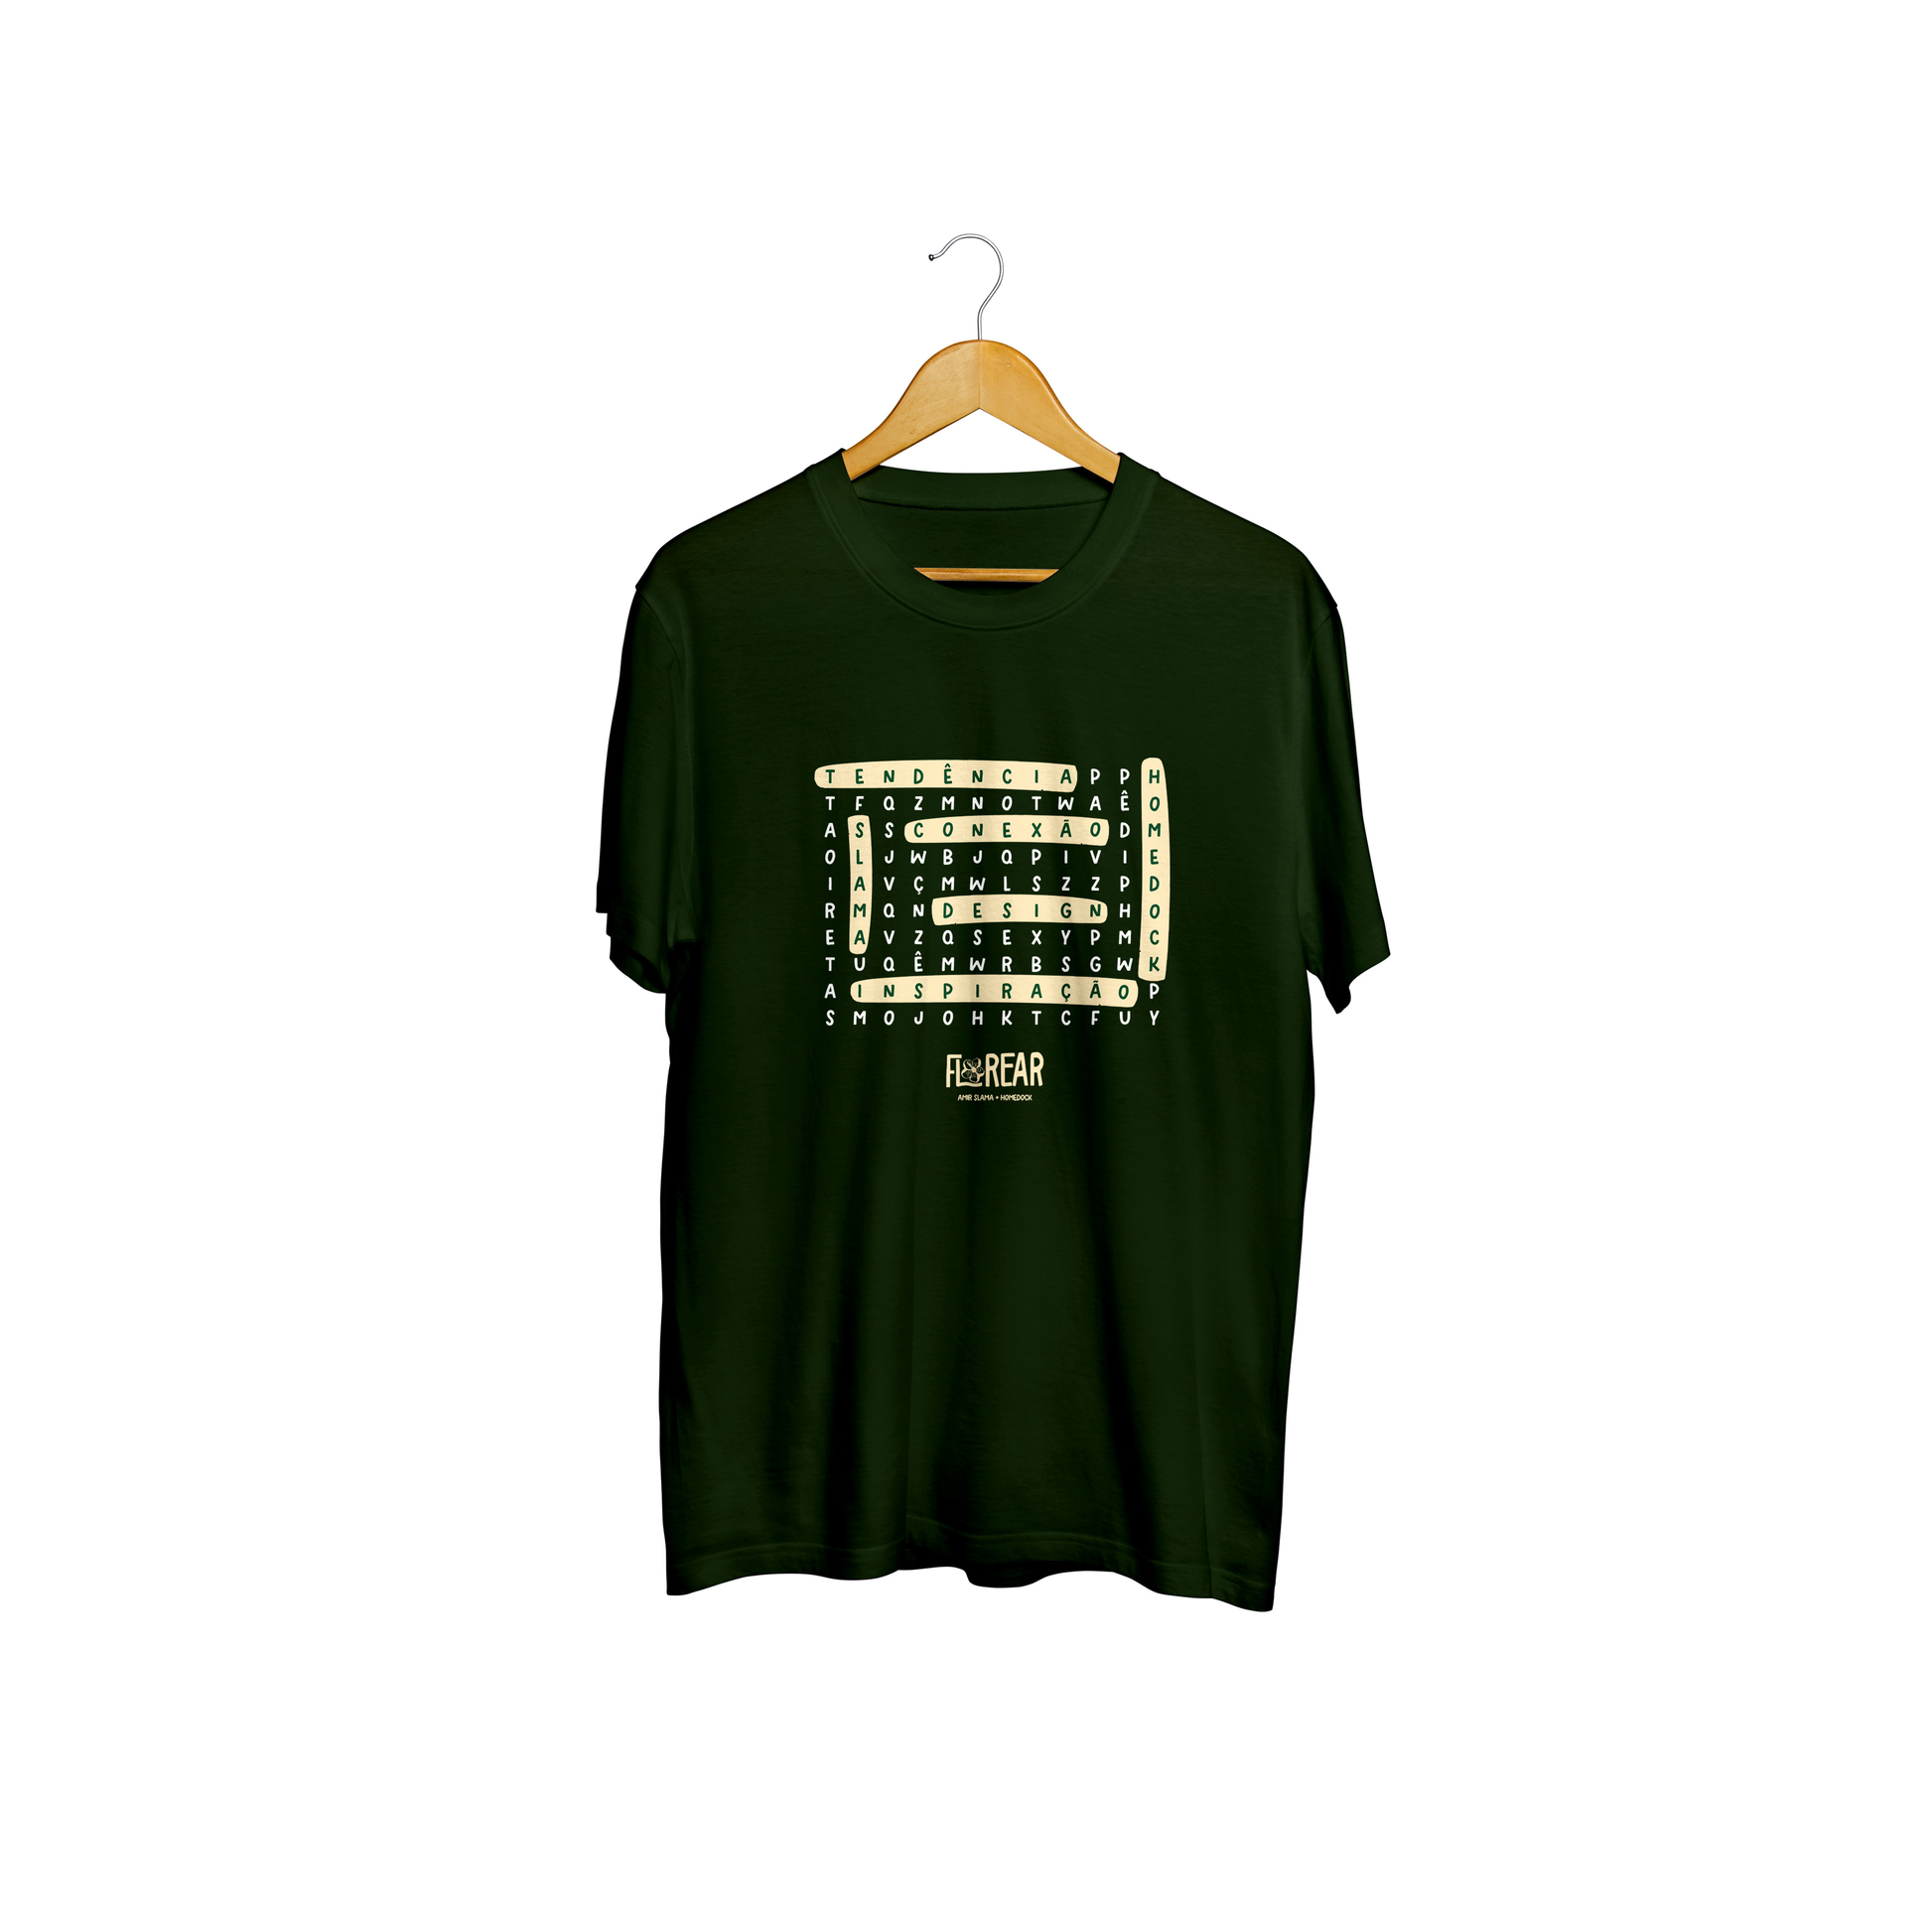 Homedock Camiseta Florear GG - Verde A Plumari